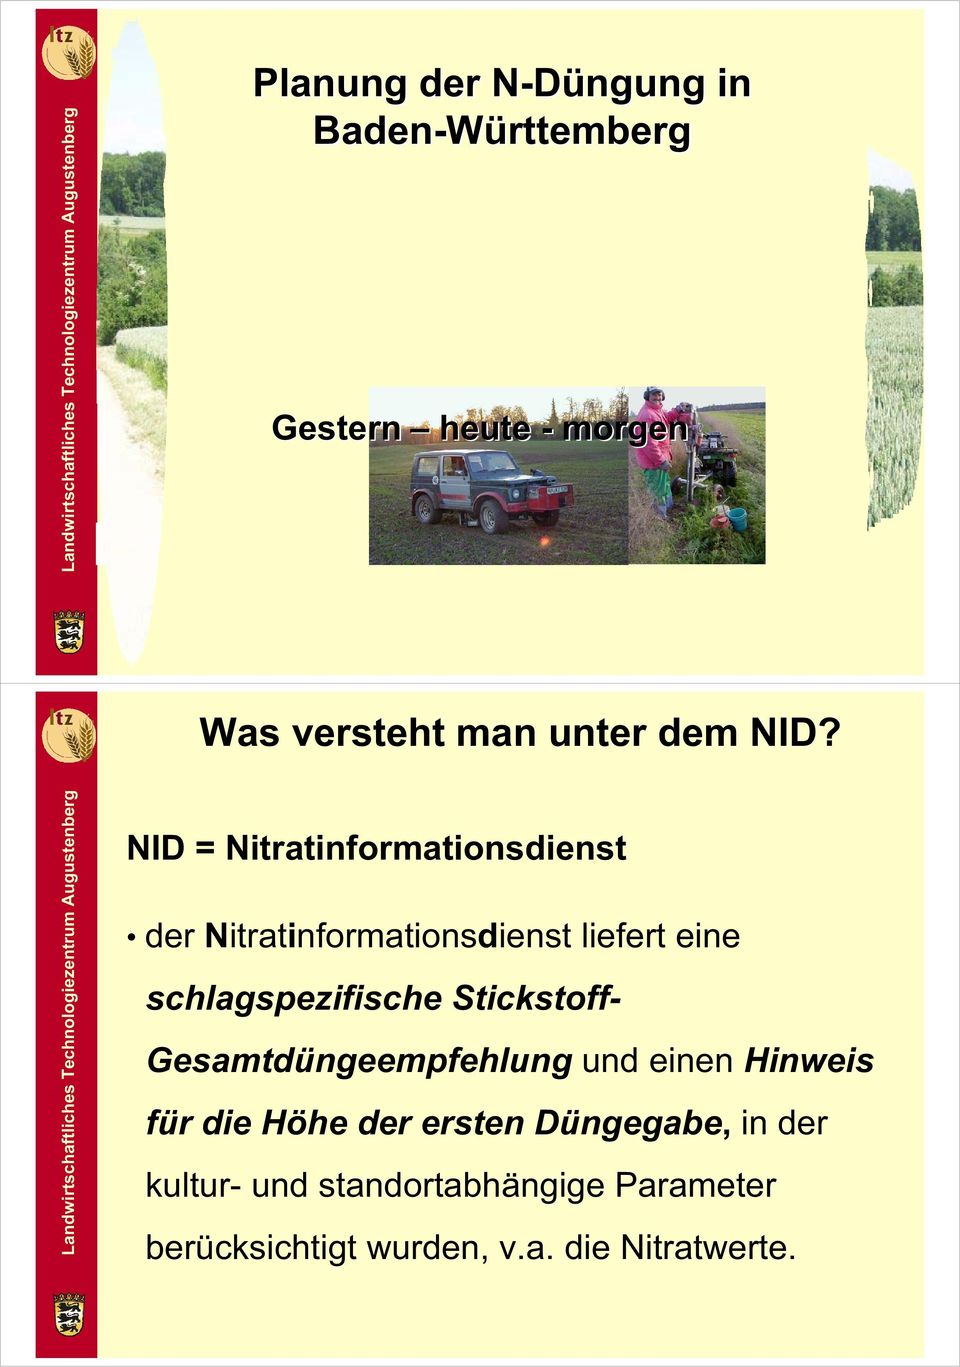 NID = Nitratinformationsdienst der Nitratinformationsdienst liefert eine schlagspezifische